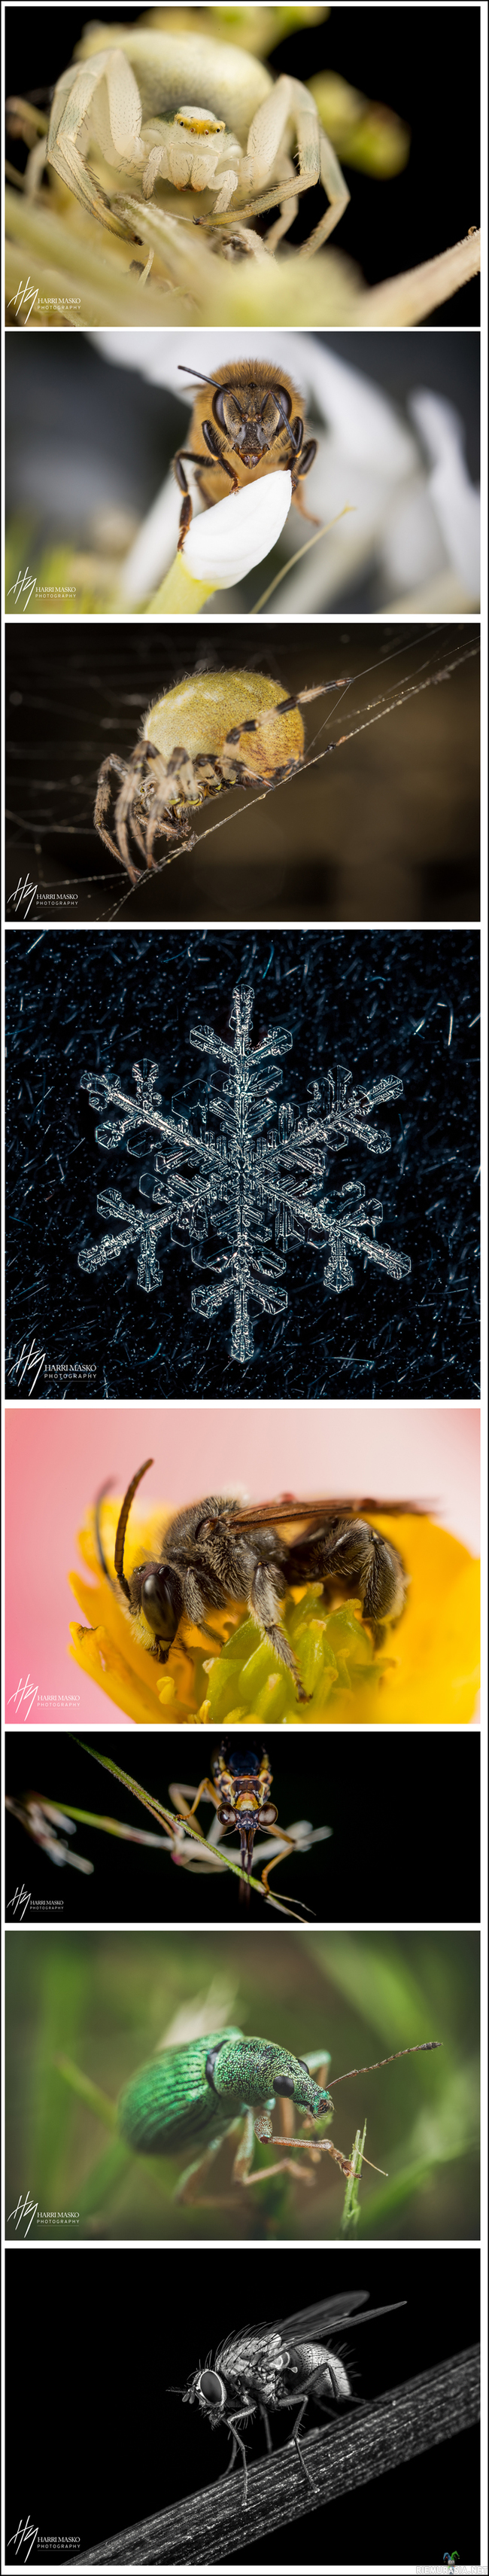 Omakehuviikko - Makrokuvia - Suomalaisia hyönteisiä kohtuullisen läheltä kuvattuna. Yksi lumihiutalekin eksyi joukkoon näytille.

Ensimmäinen mediakin joka tuli tänne ladattua vaikka on sivustoa jo näemmä reilut 8 vuotta seurannut... :) 